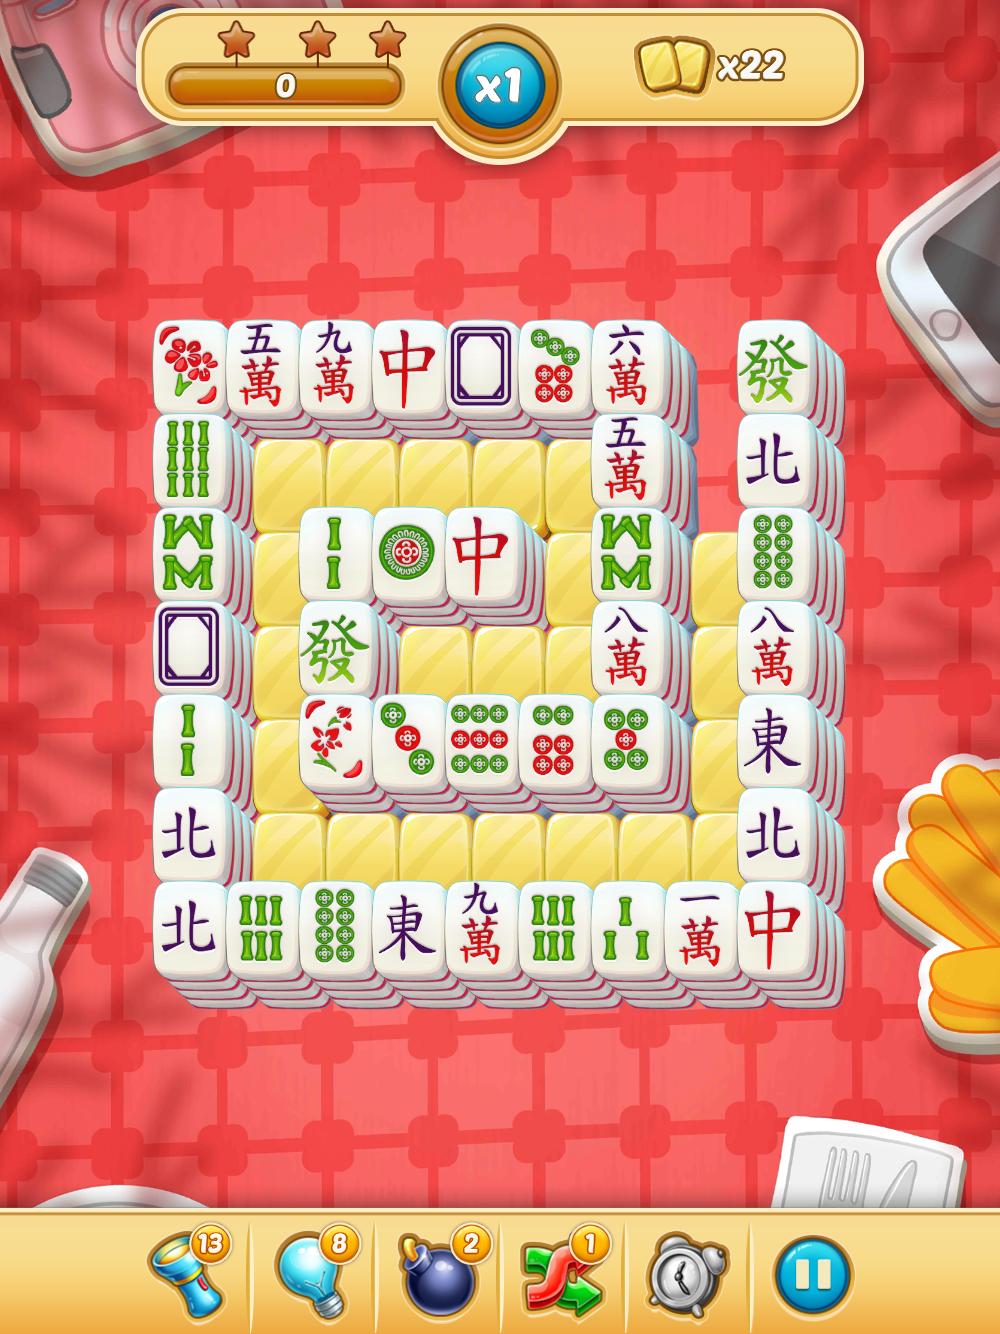 Mahjong City Tours Free Mahjong Classic Game 40.1.0 Screenshot 22